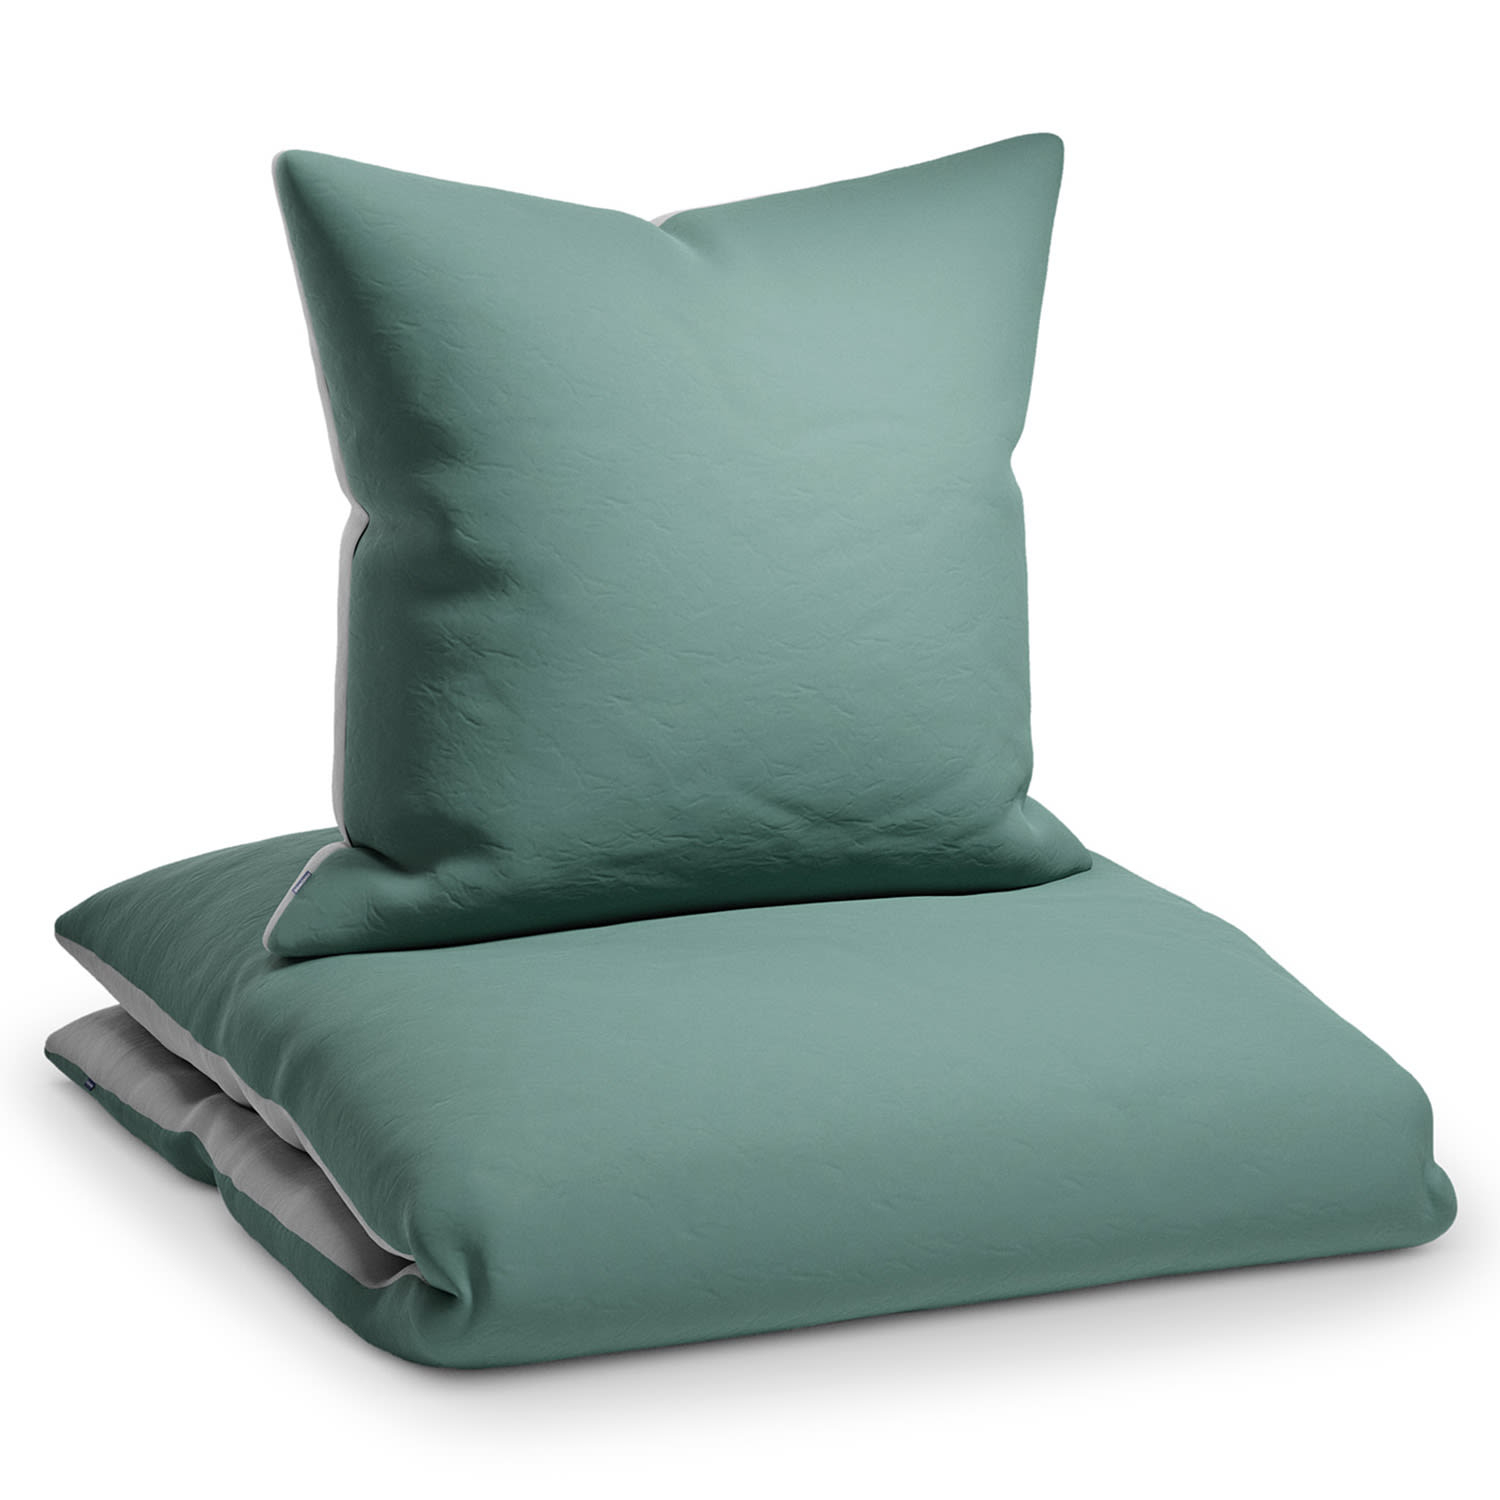 Sleepwise Soft Wonder-Edition, pościel, 135 x 200 cm, zielono-szara/jasnoszara